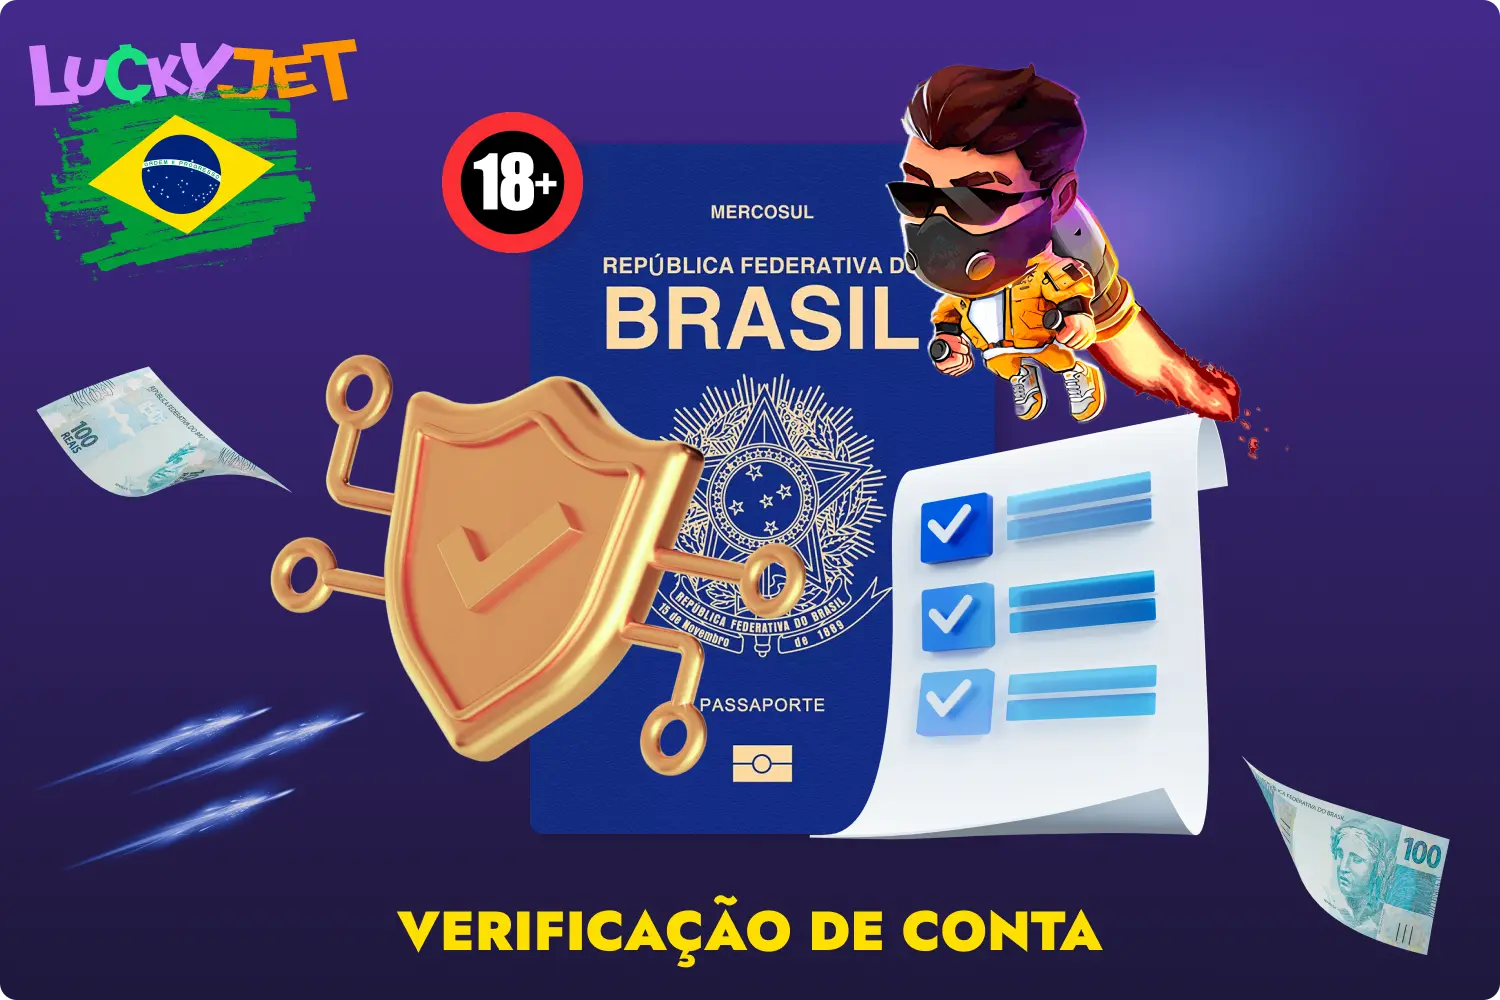 Para poder levantar fundos instantaneamente do jogo Lucky Jet, todos os utilizadores brasileiros do site 1win têm de passar por um procedimento de verificação de conta